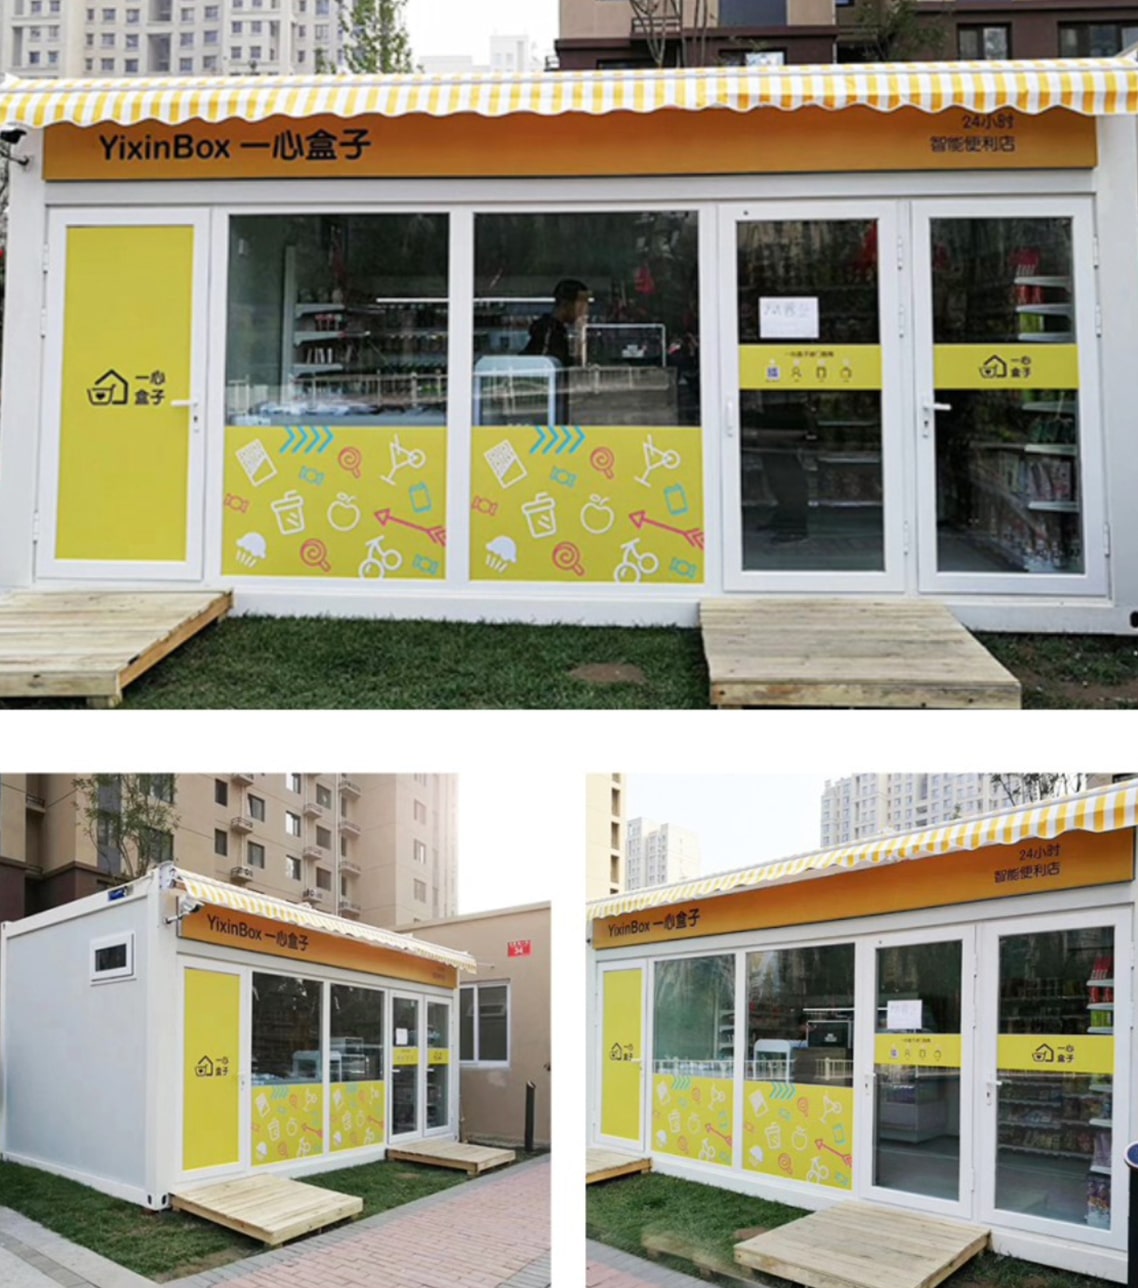 پروژه خانه کانتینری با بسته تخت - کارخانه پیش ساخته کانتینر خانه های بسته تخت، چین - بهشت ​​تابستانی